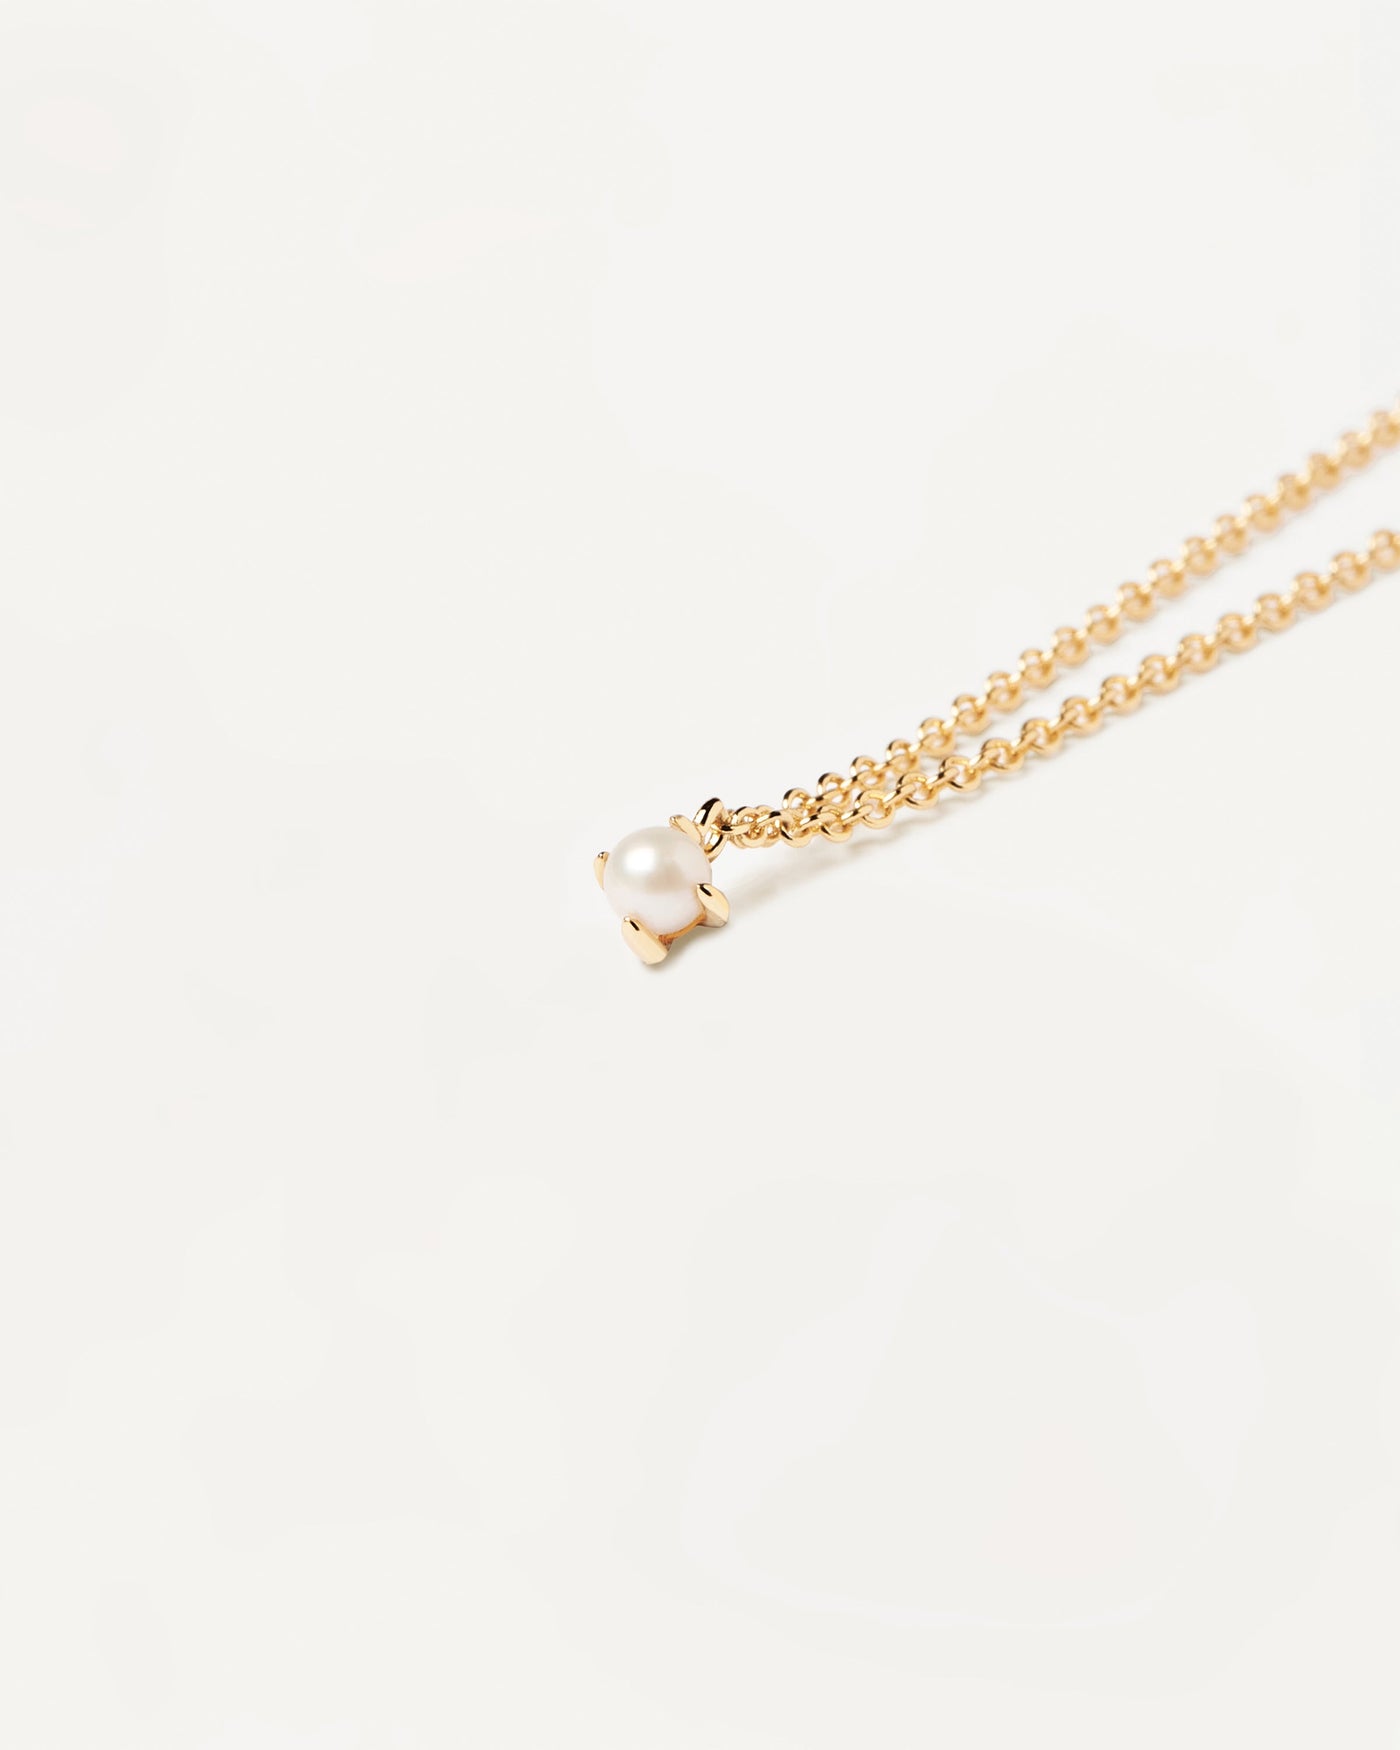 Solitary Pearl Halskette. 18 karat vergoldete halskette mit einer einzelnen naturperle angefasst. Erhalten Sie die neuesten Produkte von PDPAOLA. Geben Sie Ihre Bestellung sicher auf und erhalten Sie diesen Bestseller.